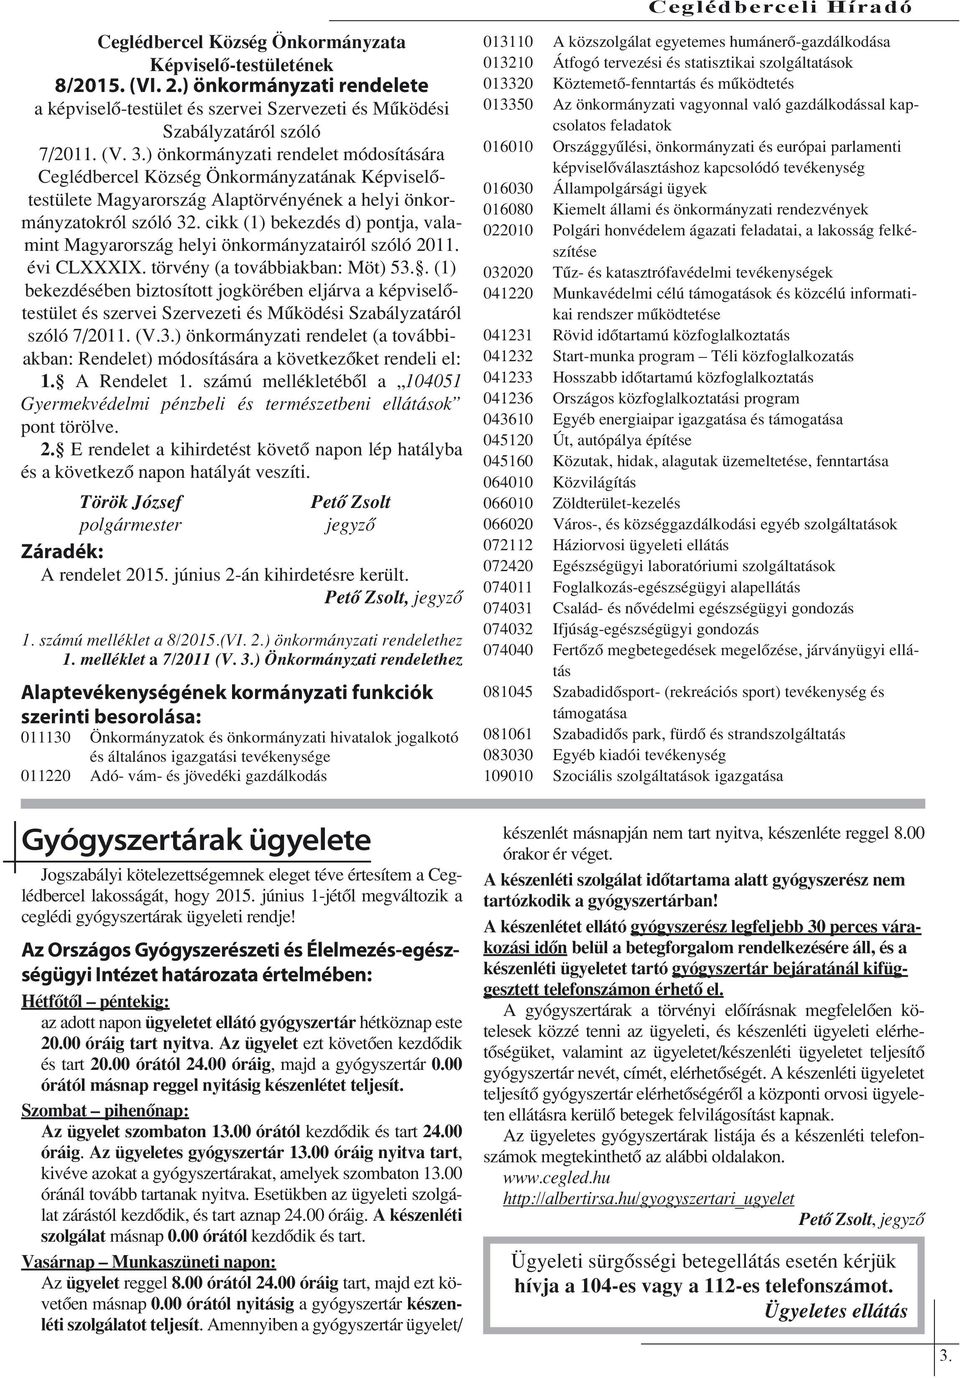 cikk (1) bekezdés d) pontja, valamint Magyarország helyi önkormányzatairól szóló 2011. évi CLXXXIX. törvény (a továbbiakban: Möt) 53.